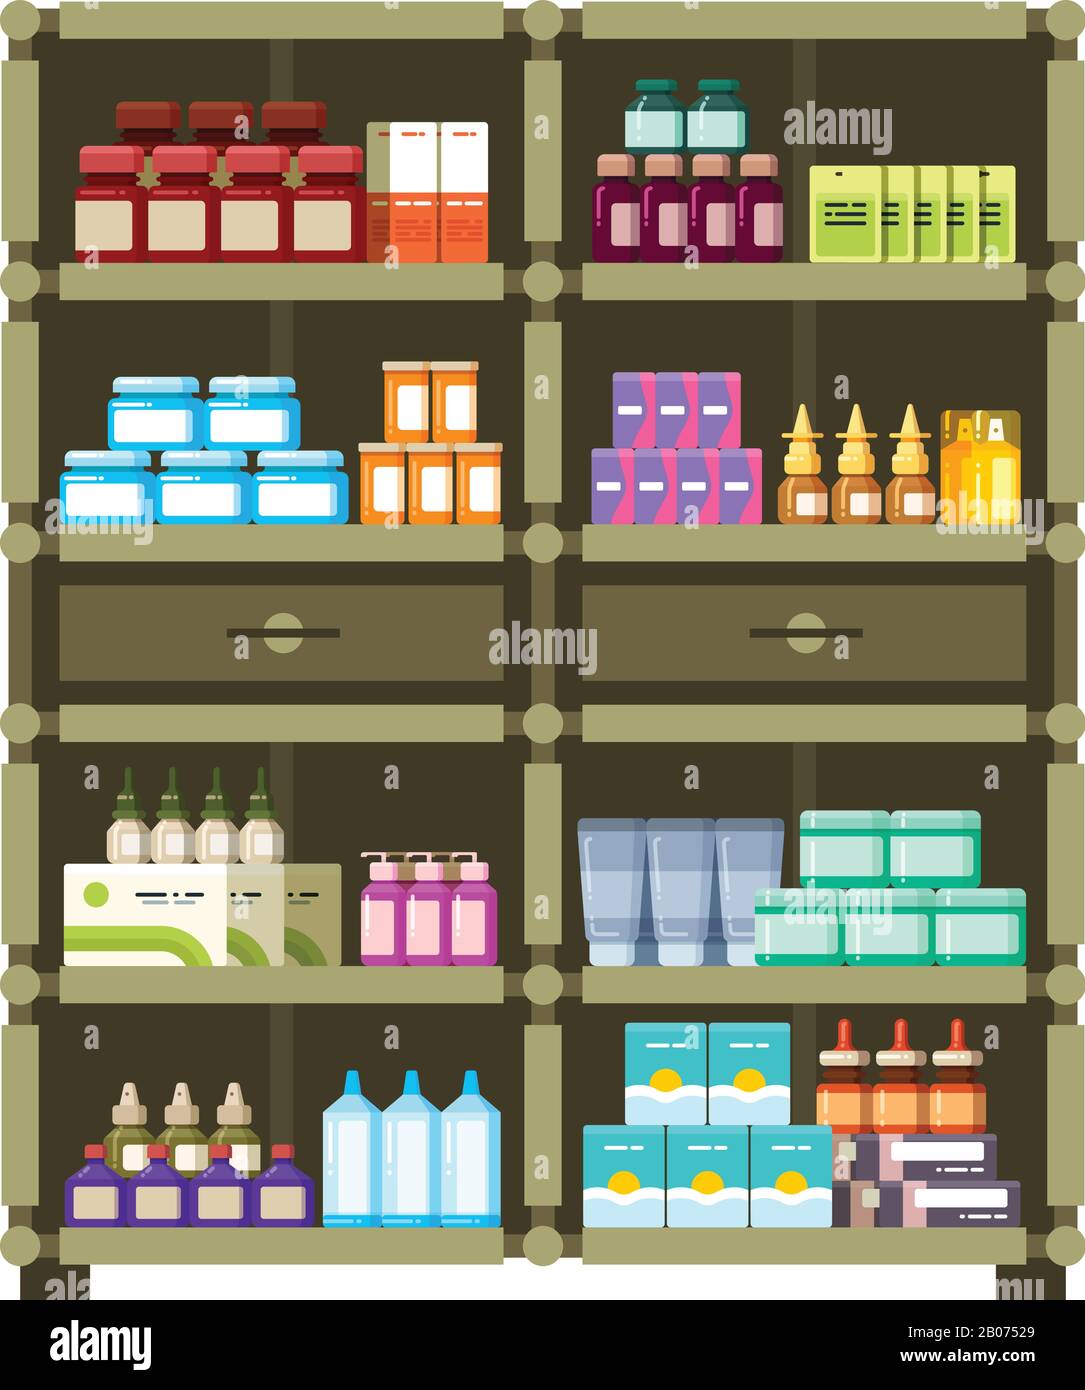 Apothekenregale mit medizinischer Schachtel und Flaschen für Medikamente flaches Vektorkonzept. Abbildung: Vitamin und Antibiotikum für Medikamente Stock Vektor